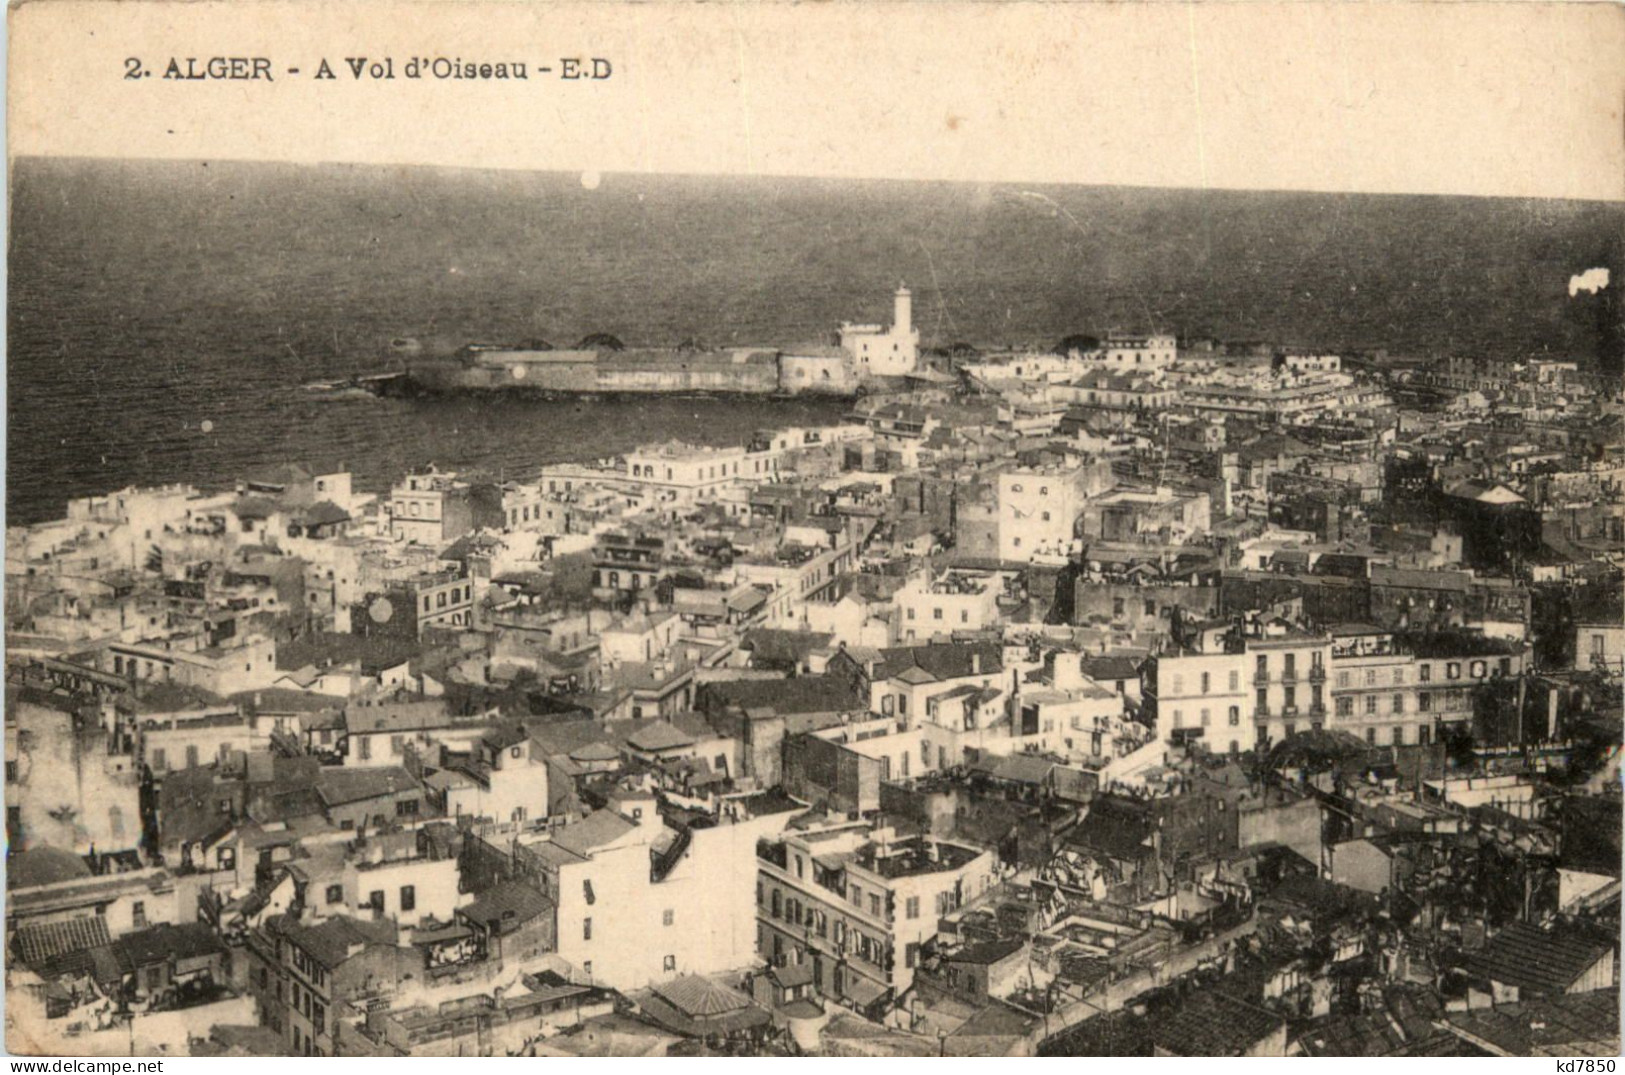 Alger, A Vol DÒiseau - Algiers